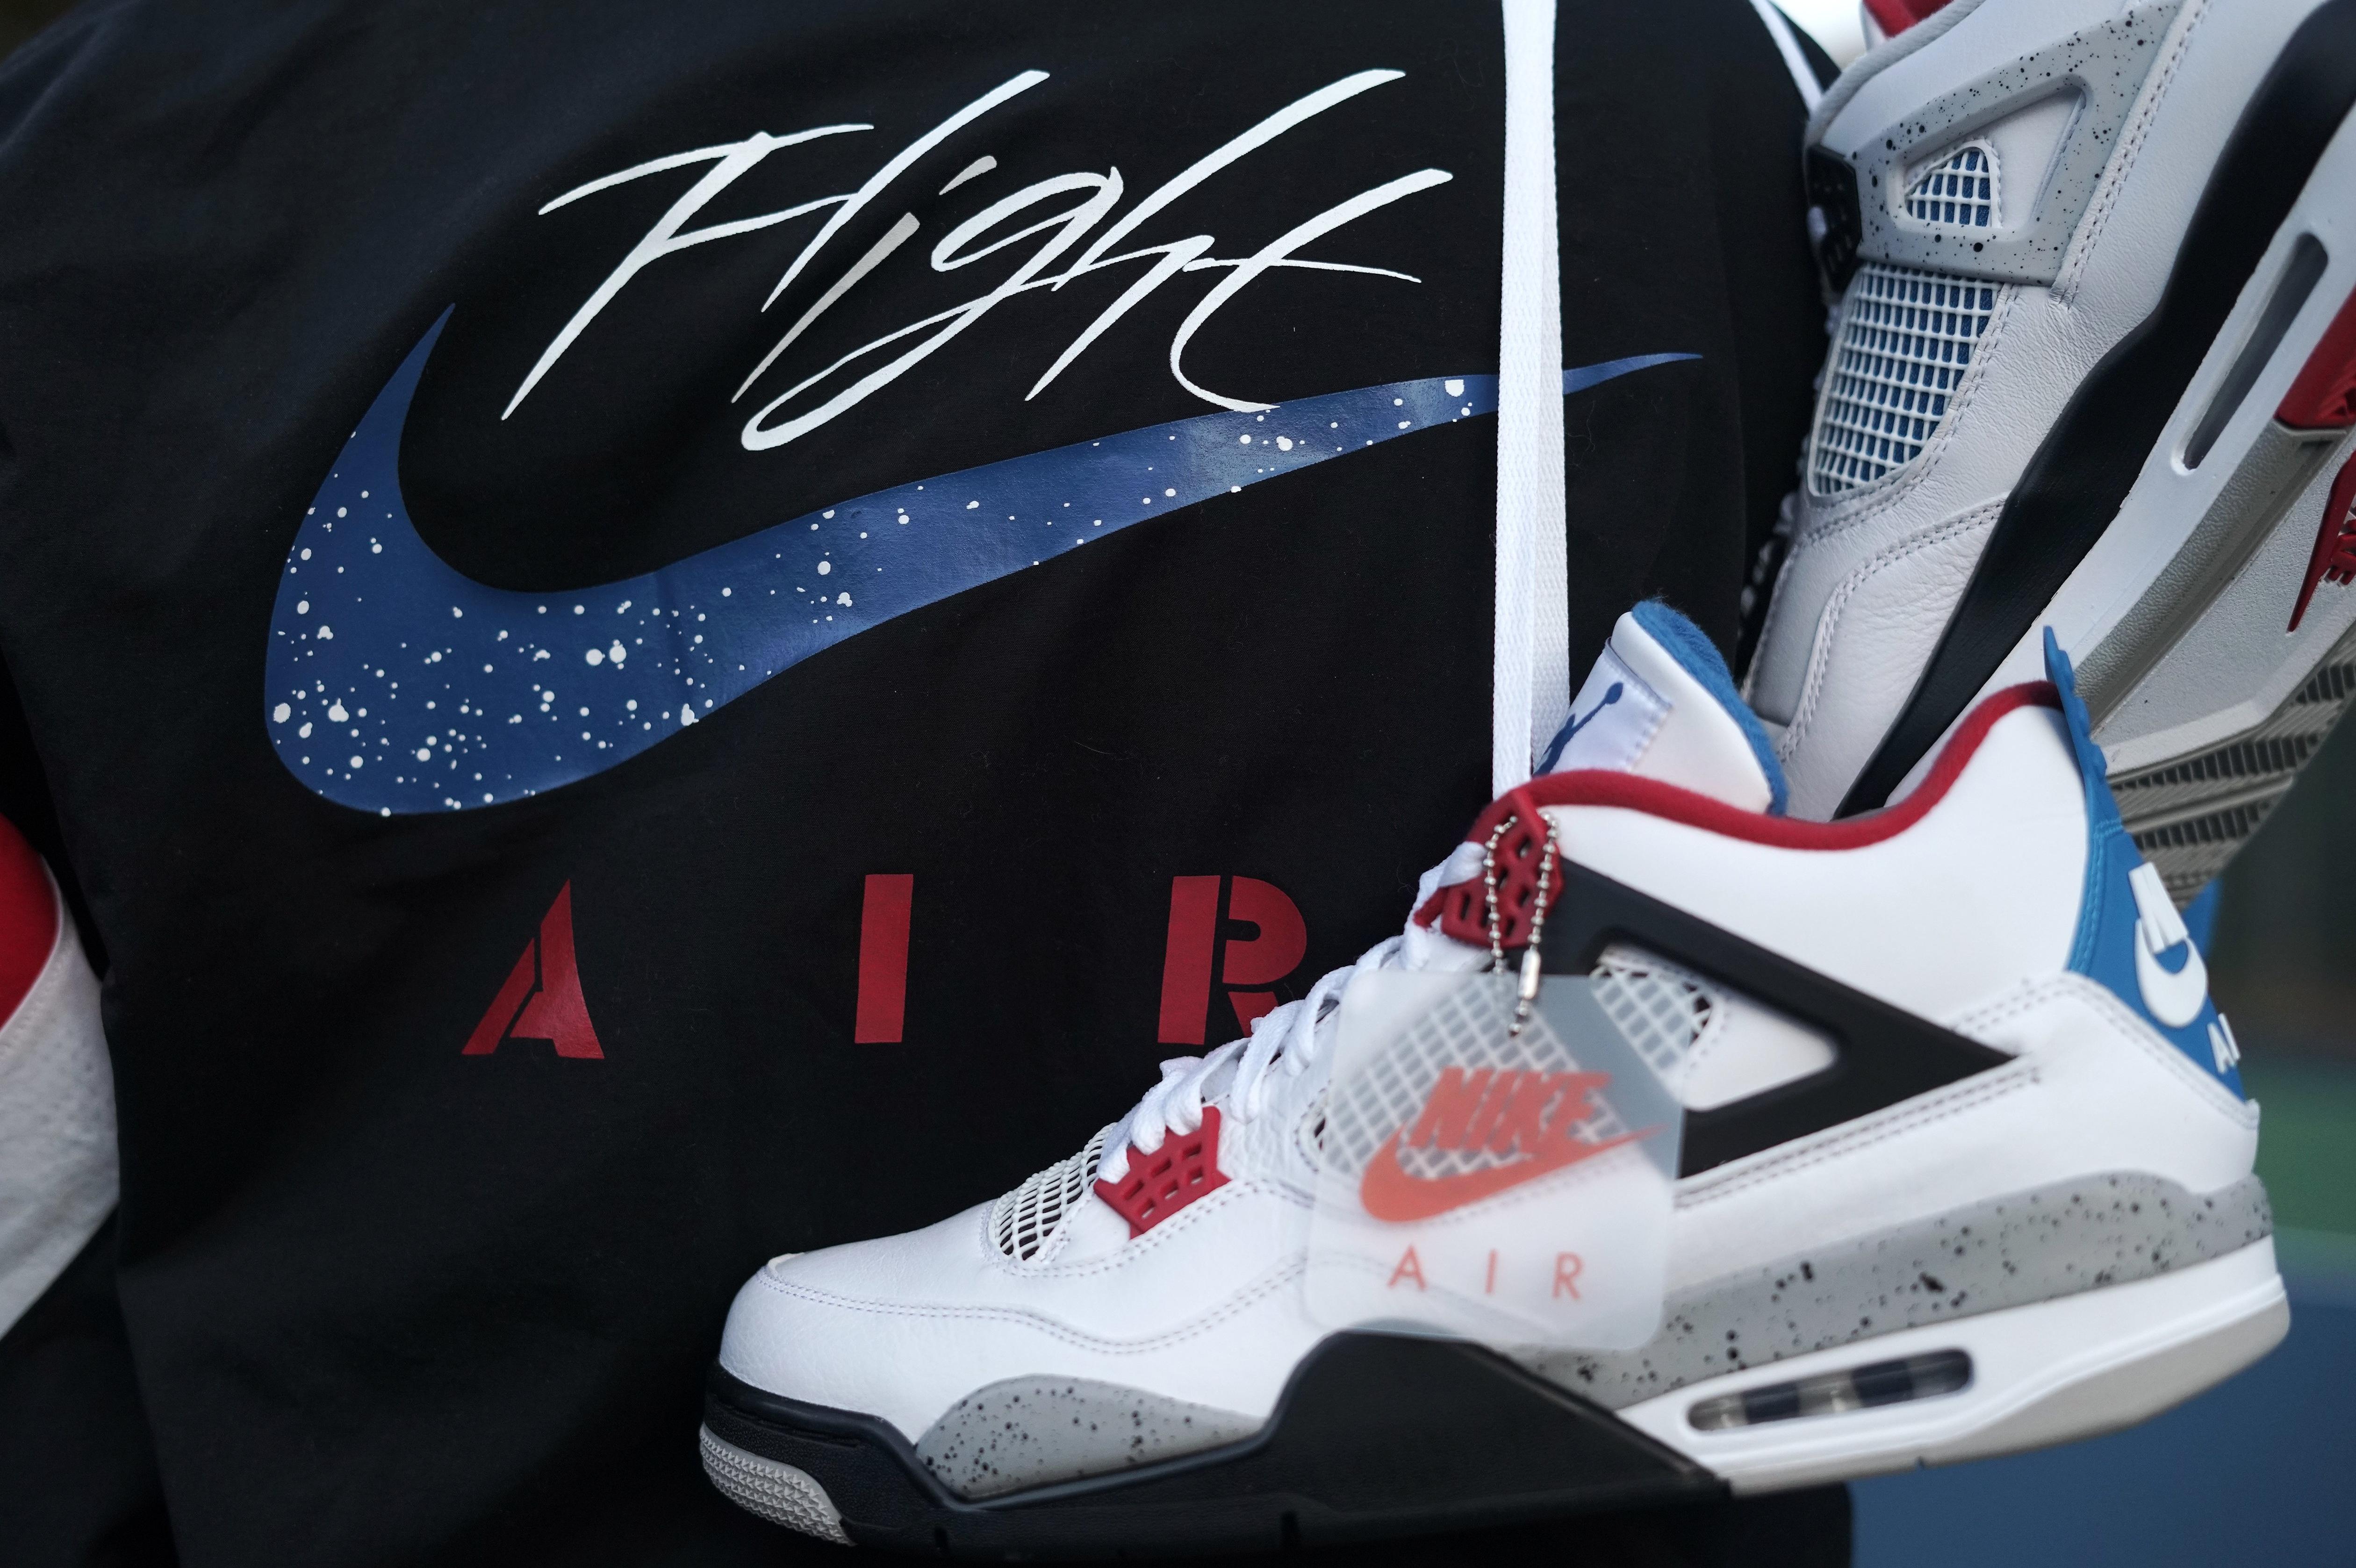 Sneakers Release – “What The?” Air Jordan 4 Retro